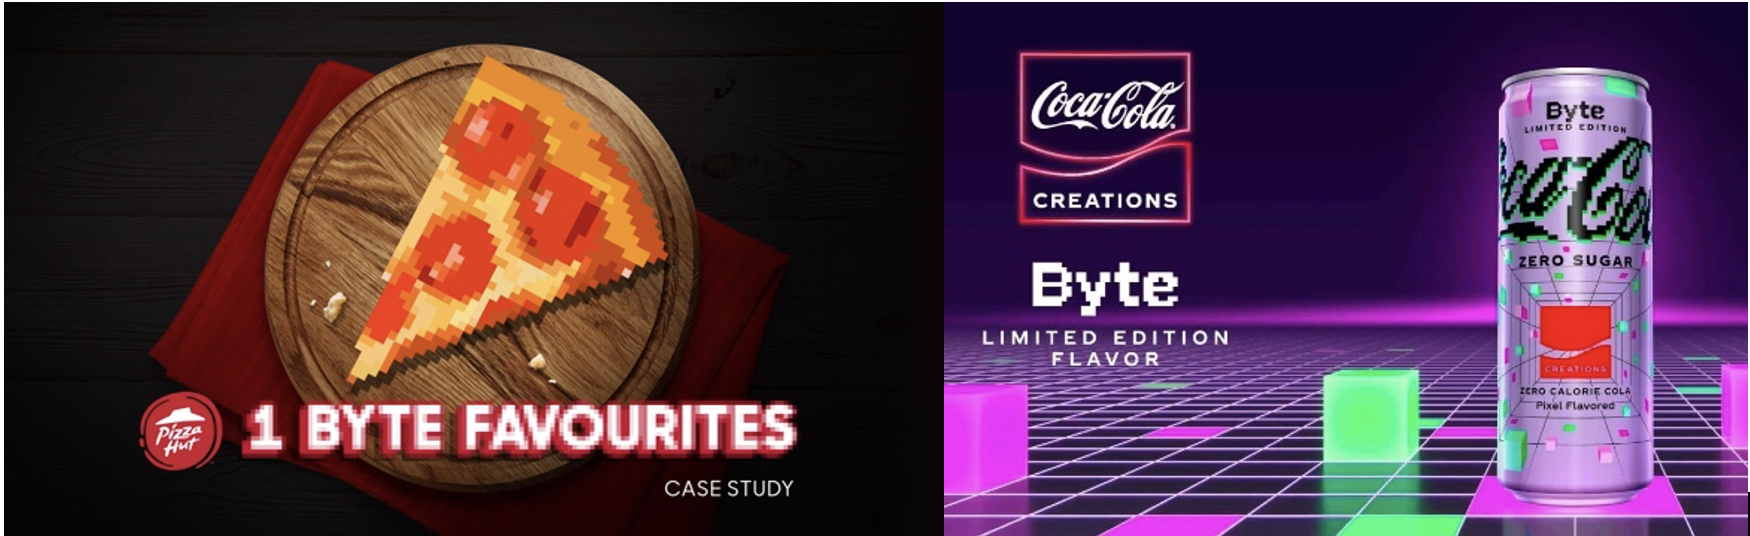 Pizza Hut 1 Byte Favorites/Coca-cola Zero sugar byte